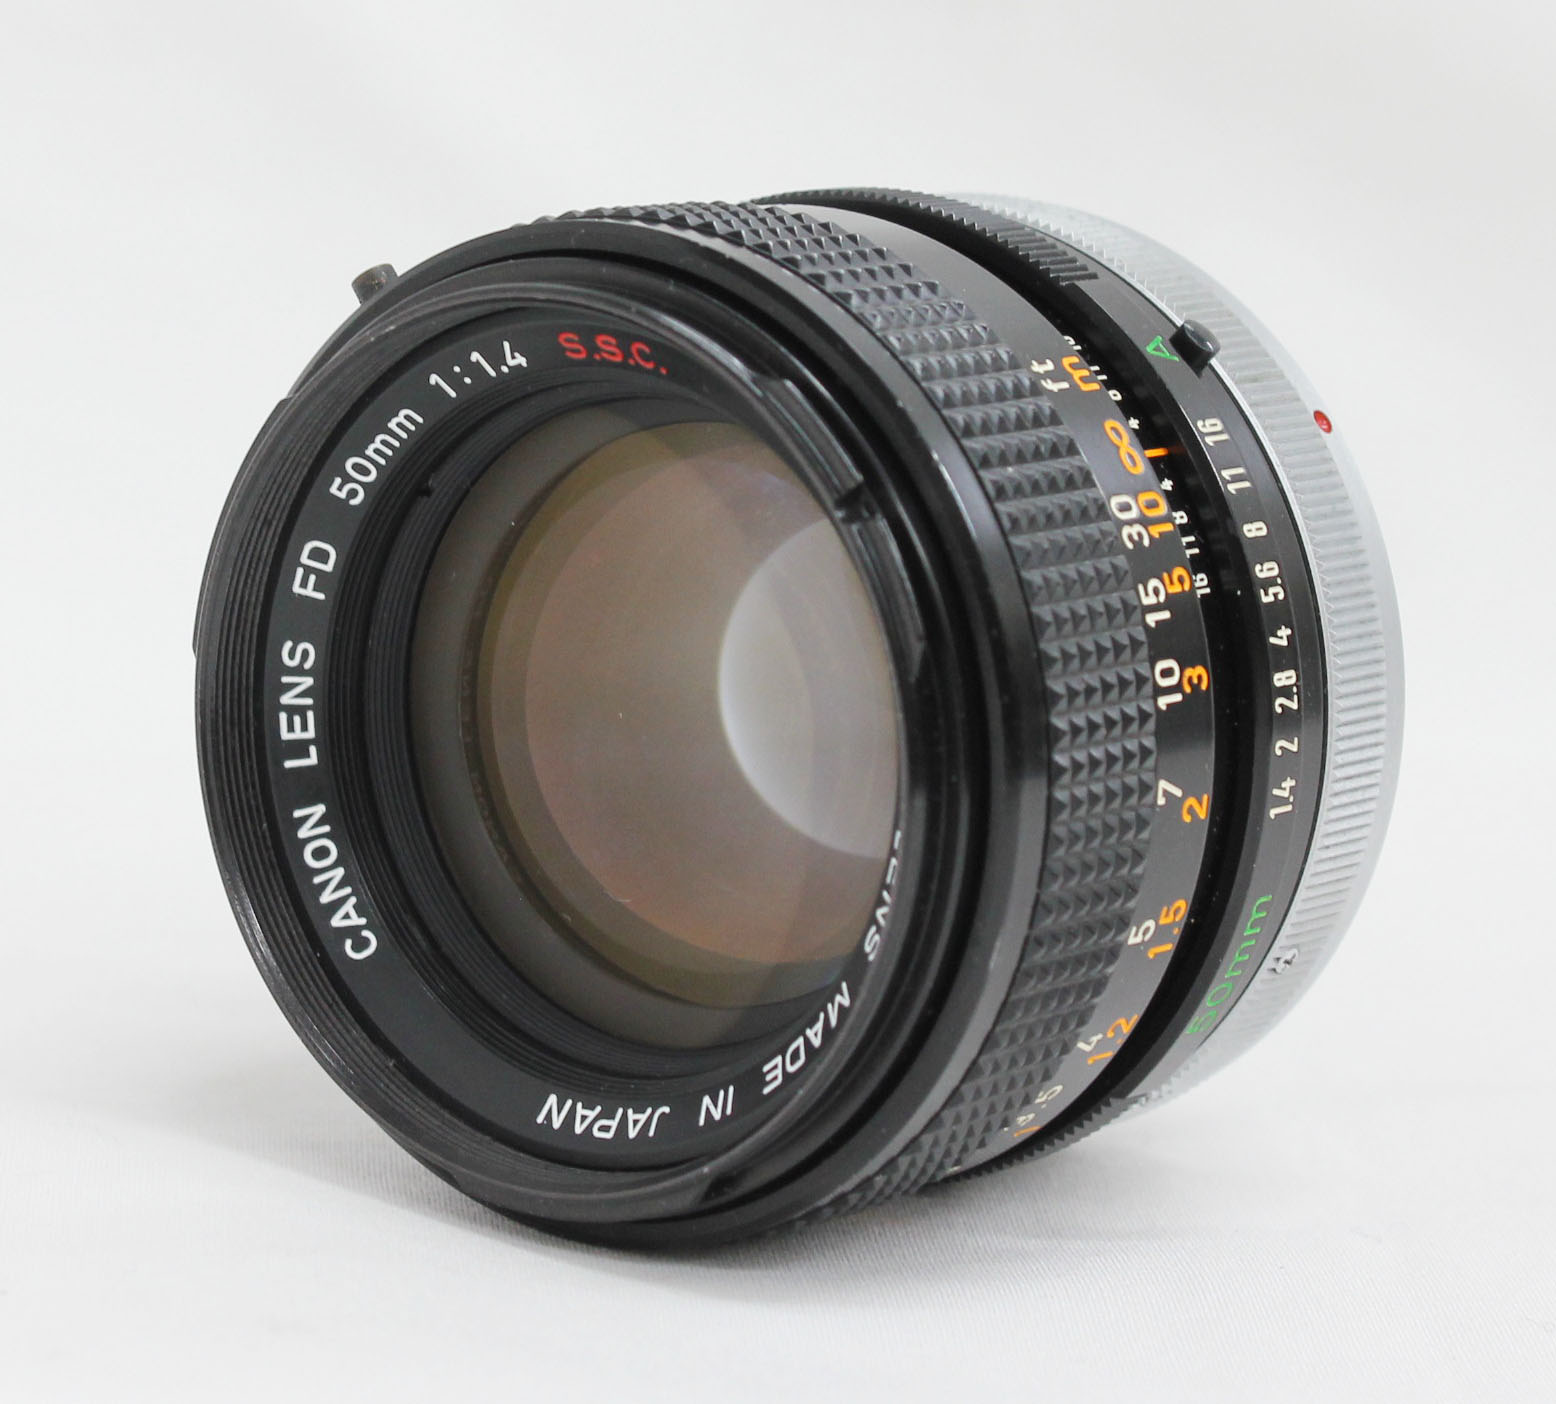 Canon AE-1 35mm SLR Camera with FD 50mm F/1.4 S.S.C. Lens from Japan Photo 12